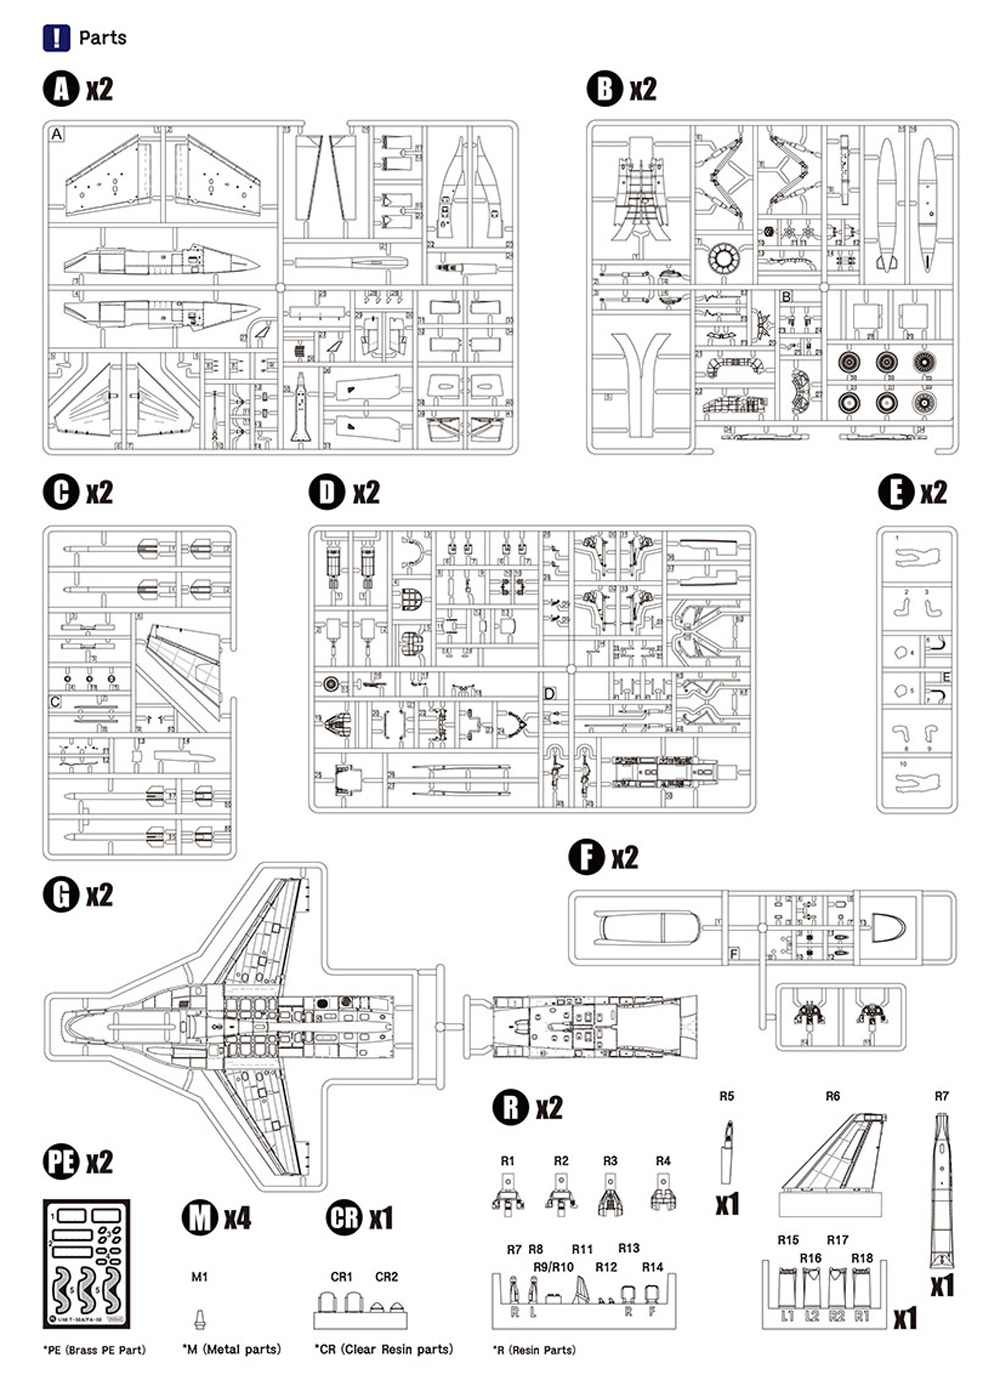 T-50A ゴールデンイーグル T-X プログラム プラモデル (ウルフパック ウルフパックデザイン プレミアムエディションキット No.WP14810) 商品画像_1